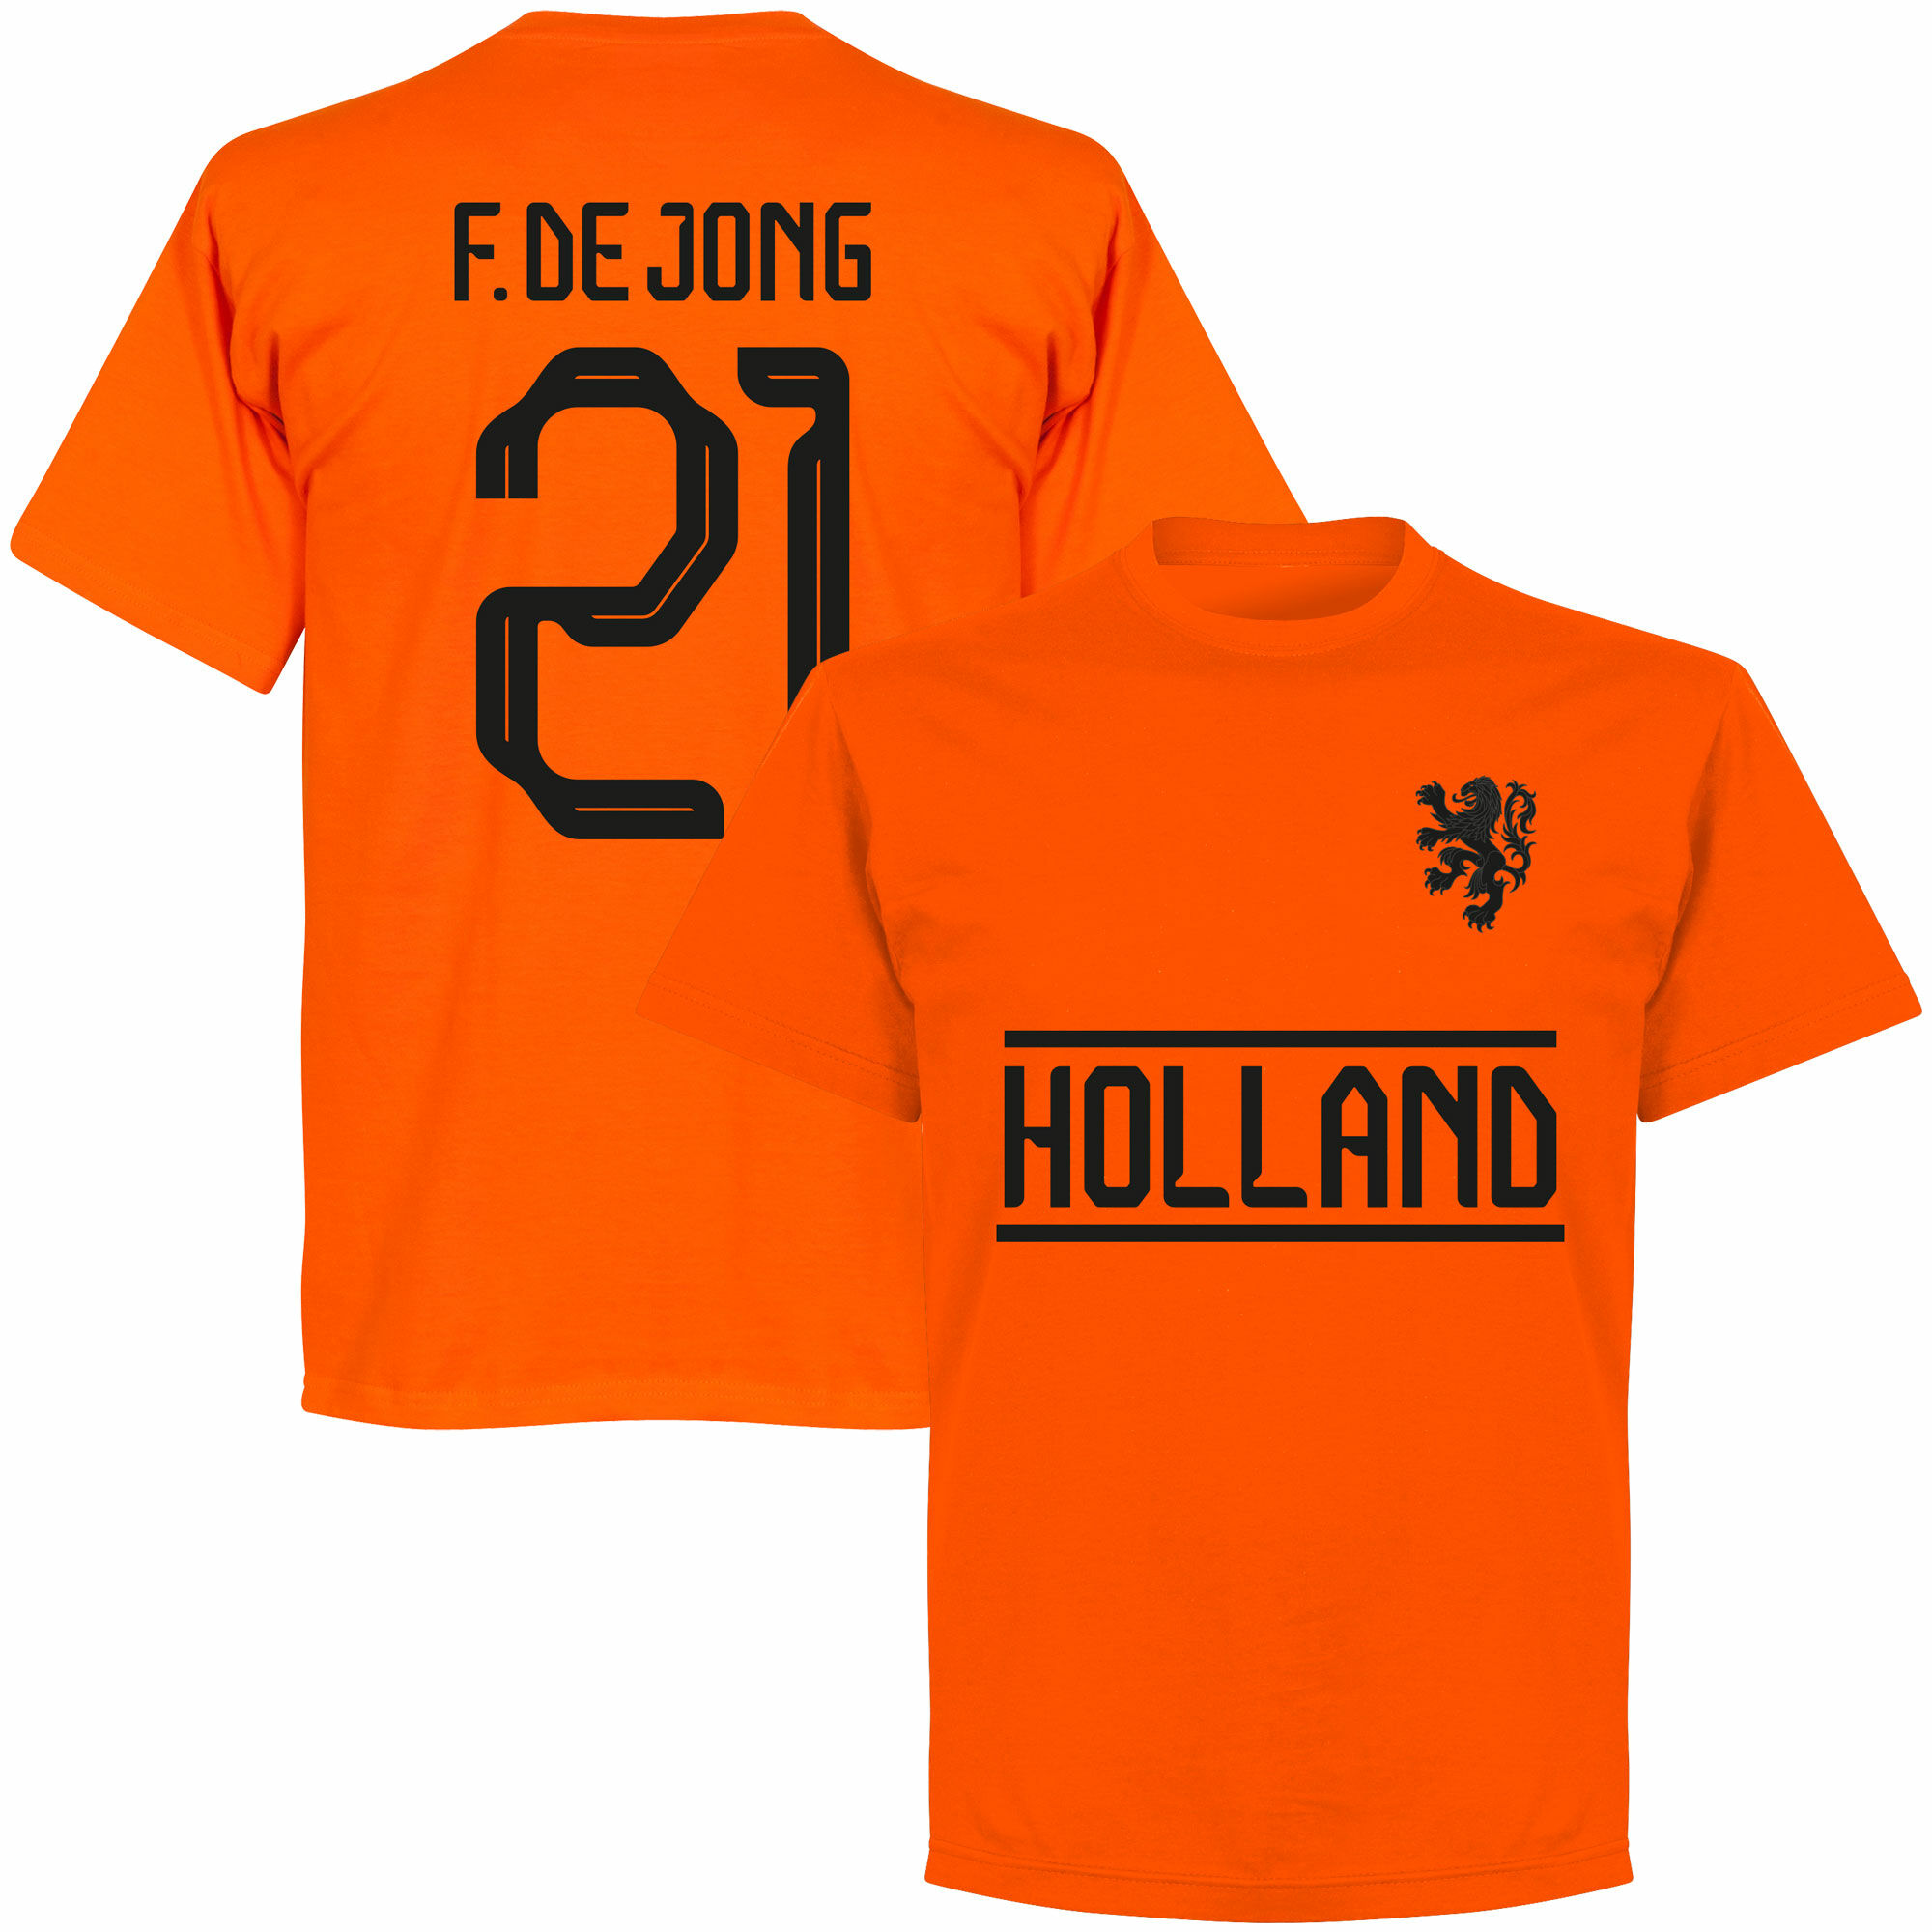 Nizozemí - Tričko dětské - oranžové, číslo 21, Frenkie de Jong